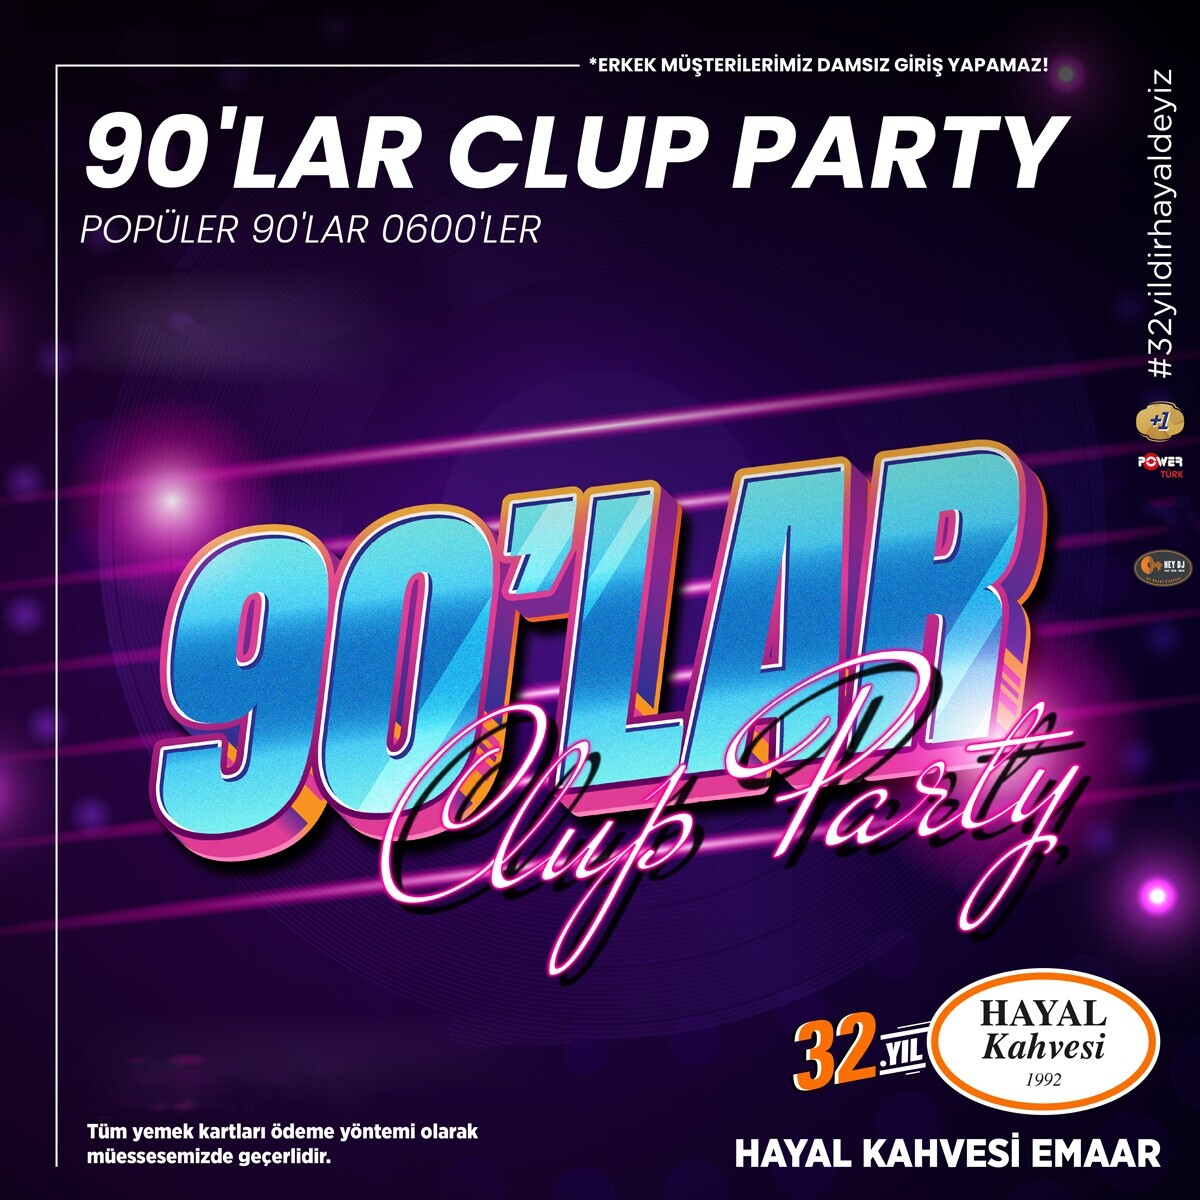 90'lar Clup Party Hayal Kahvesi Emaar Konser Bileti